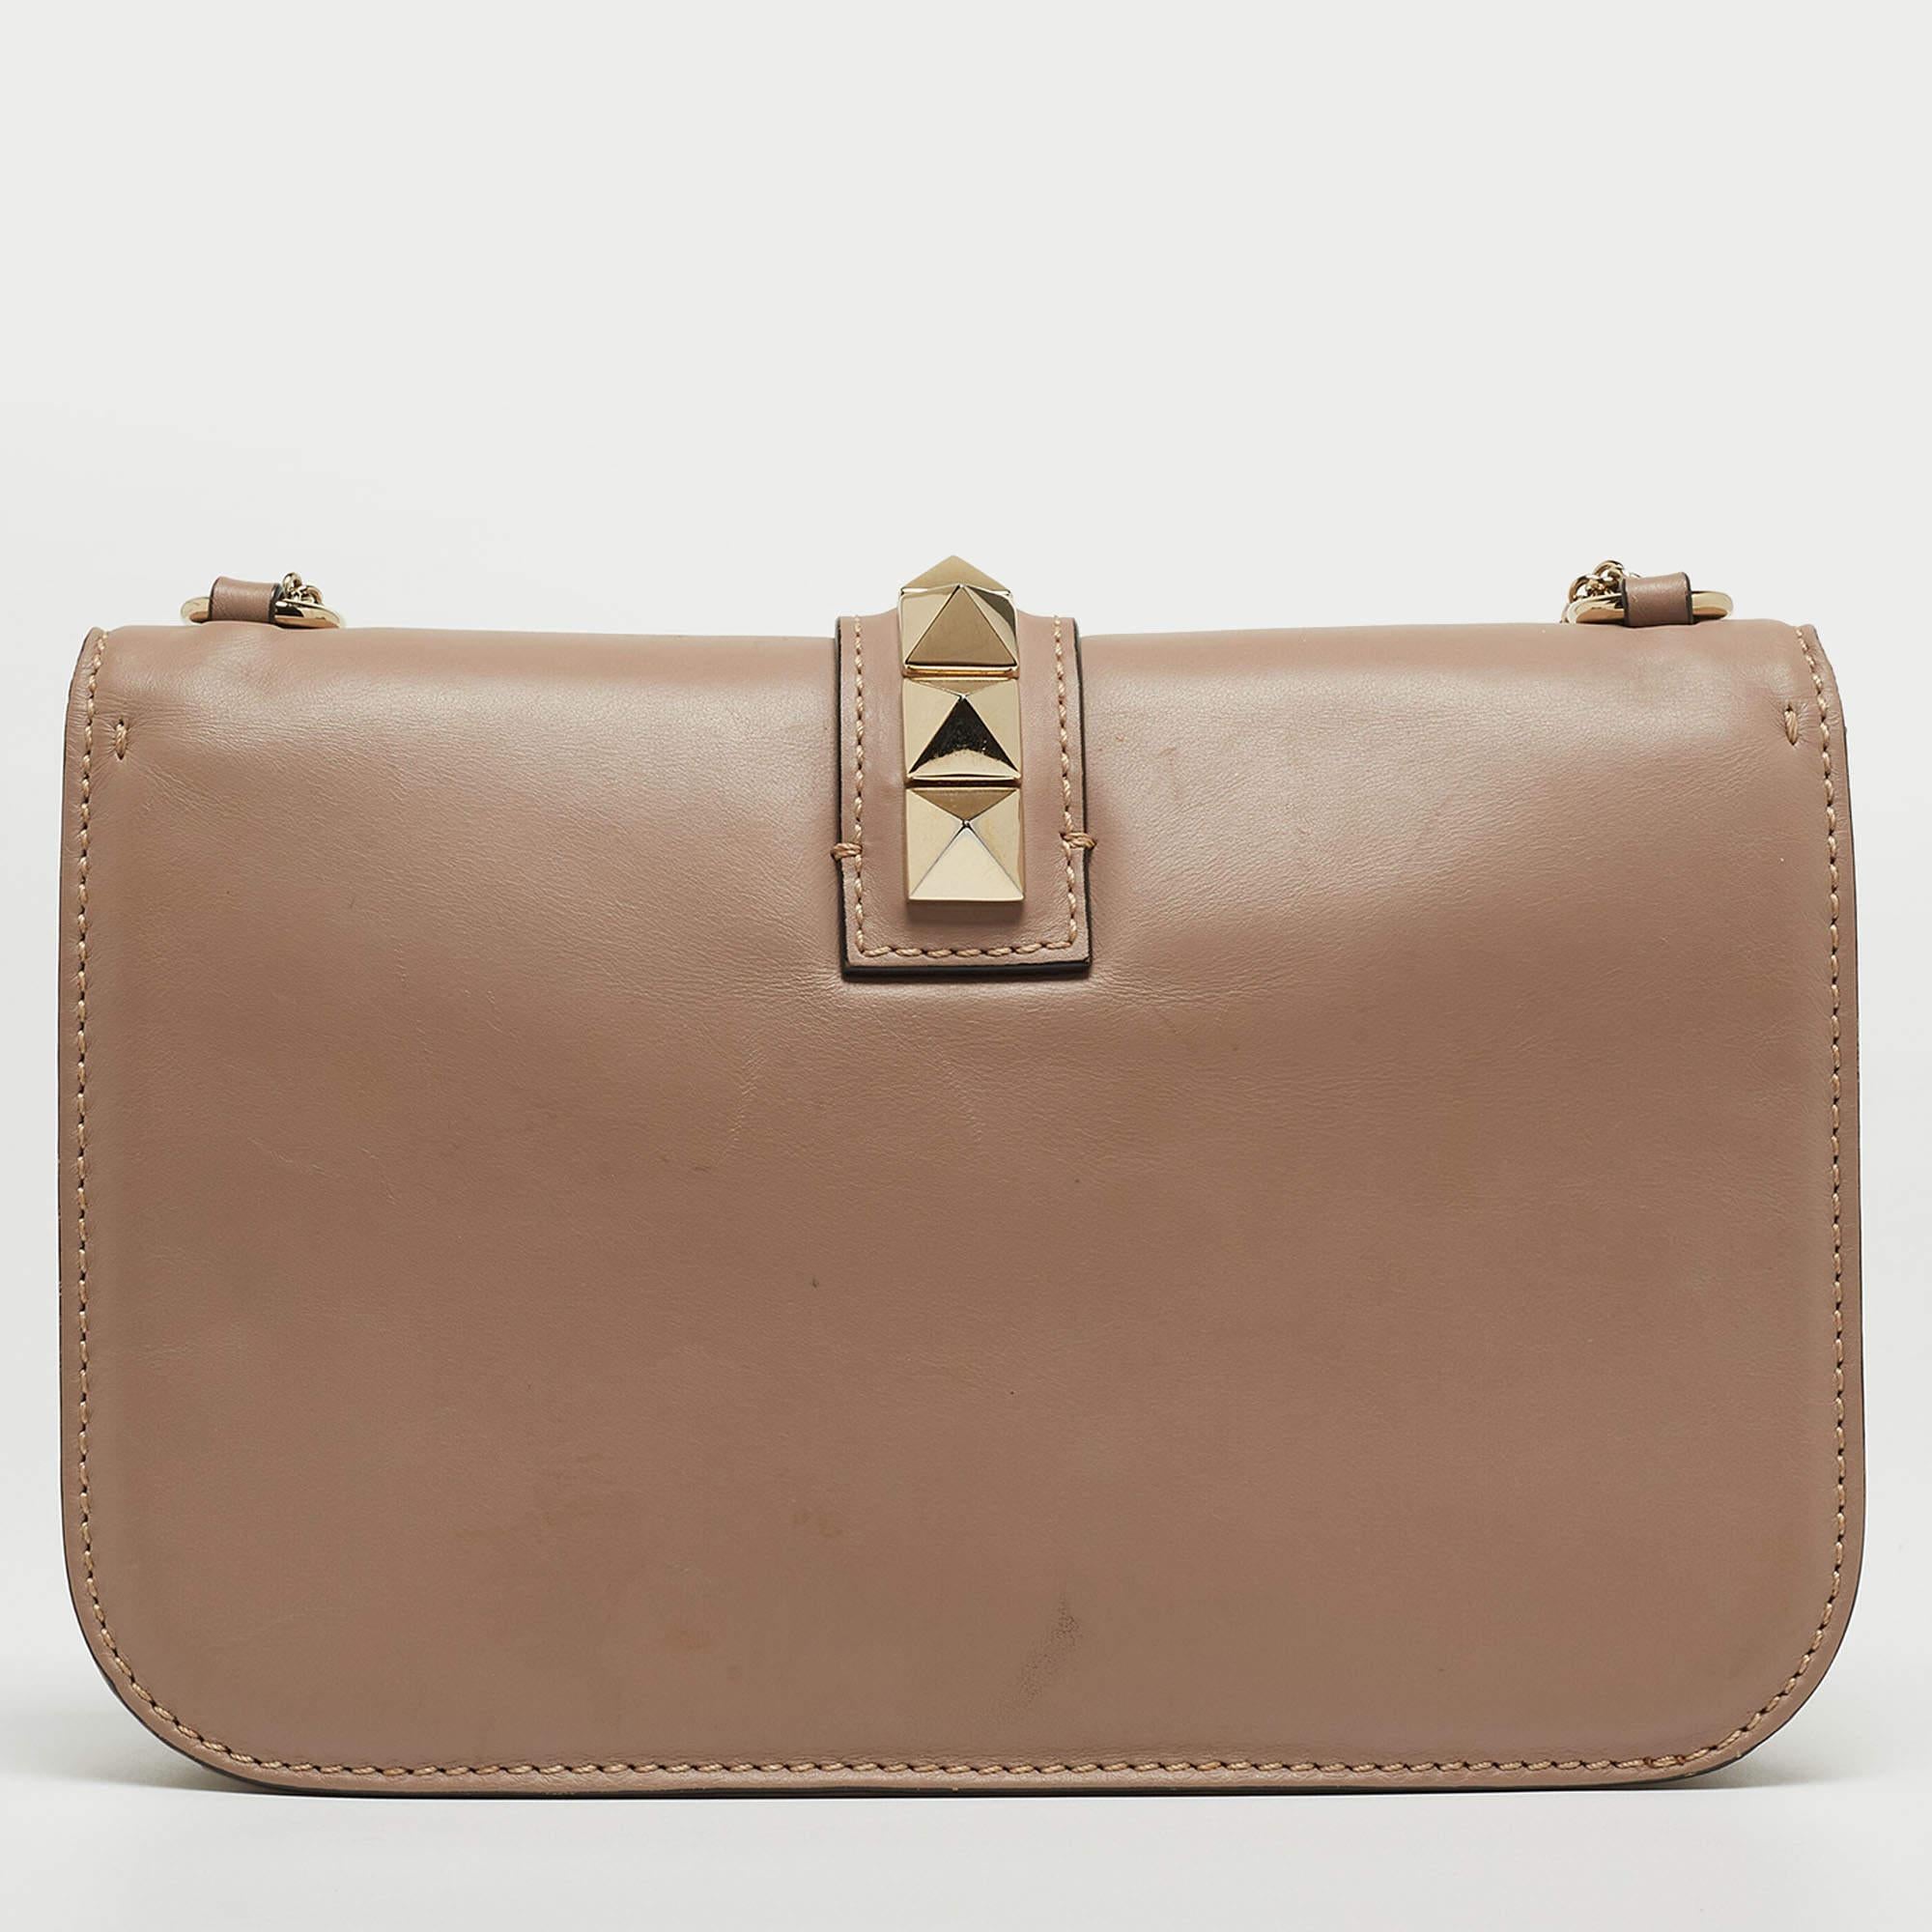 Célébrant le riche héritage de la marque, ce sac Valentino est décoré de Rockstuds. Il est fabriqué en cuir et présente un design remarquable. Doublé de tissu, il est sécurisé par une fermeture verrouillée de la marque sur le rabat avant. La